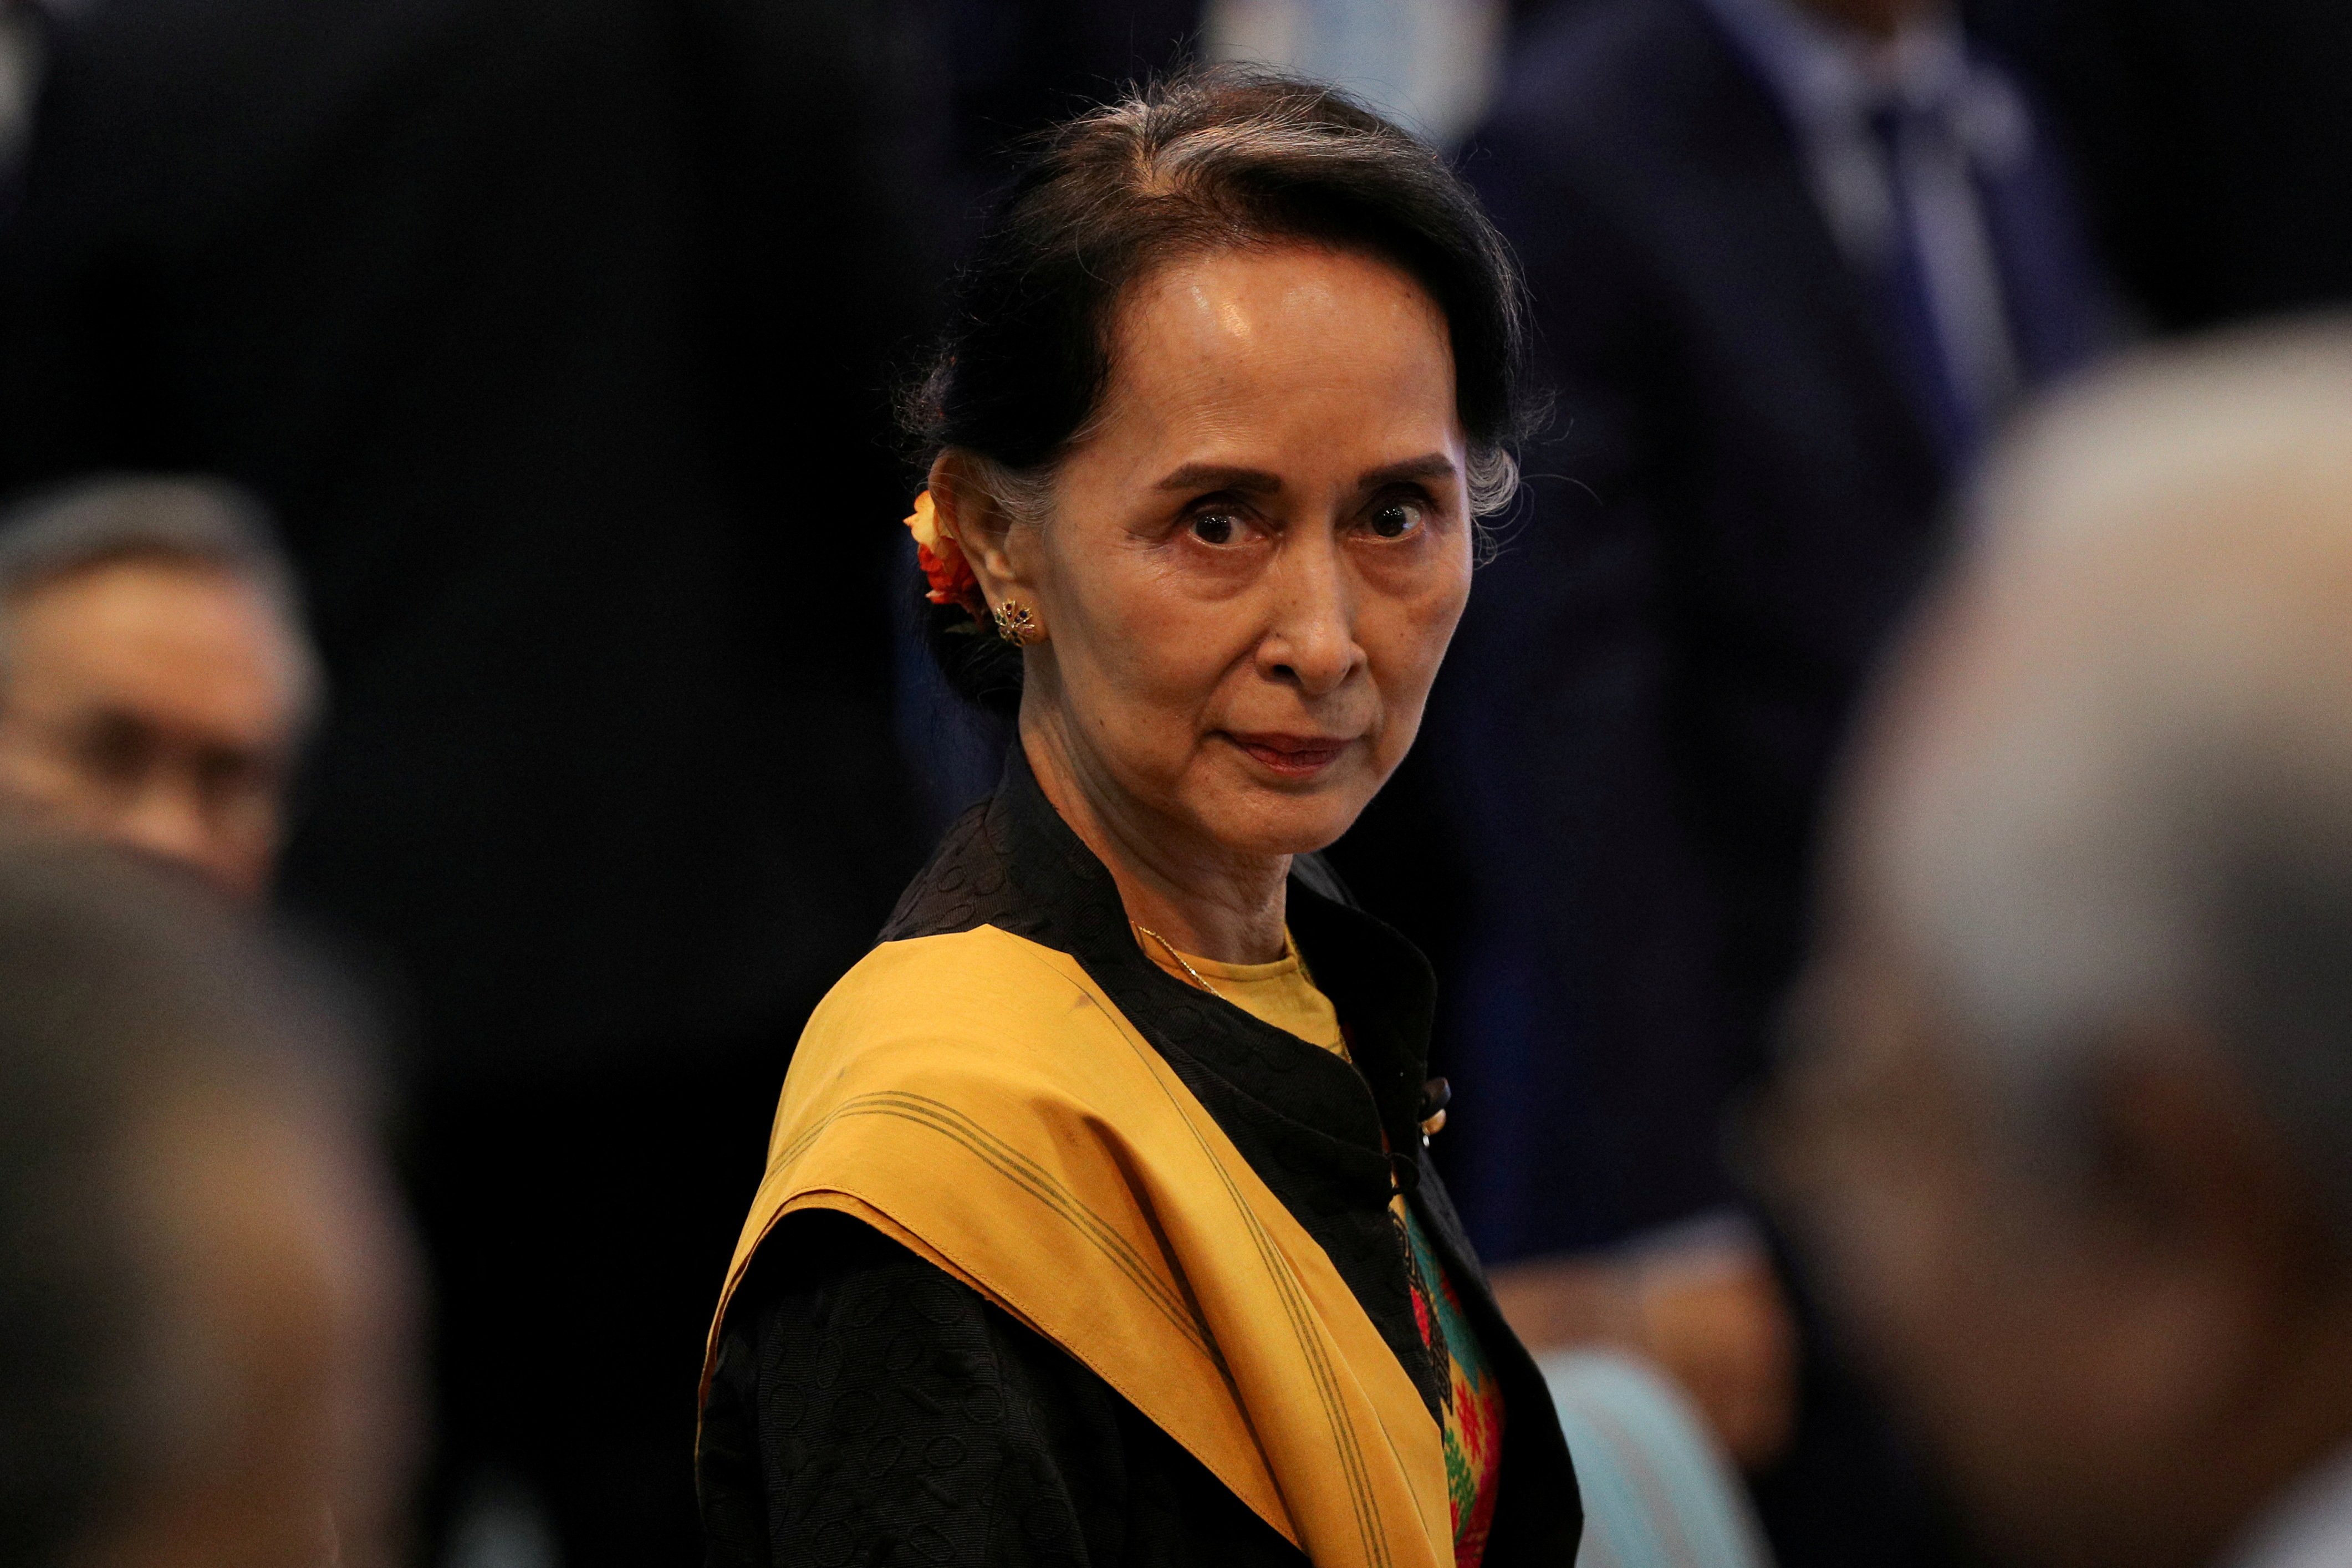 La junta militar de Myanmar arremetió contra la líder Aung San Suu Kyi y anunció la disolución de su partido